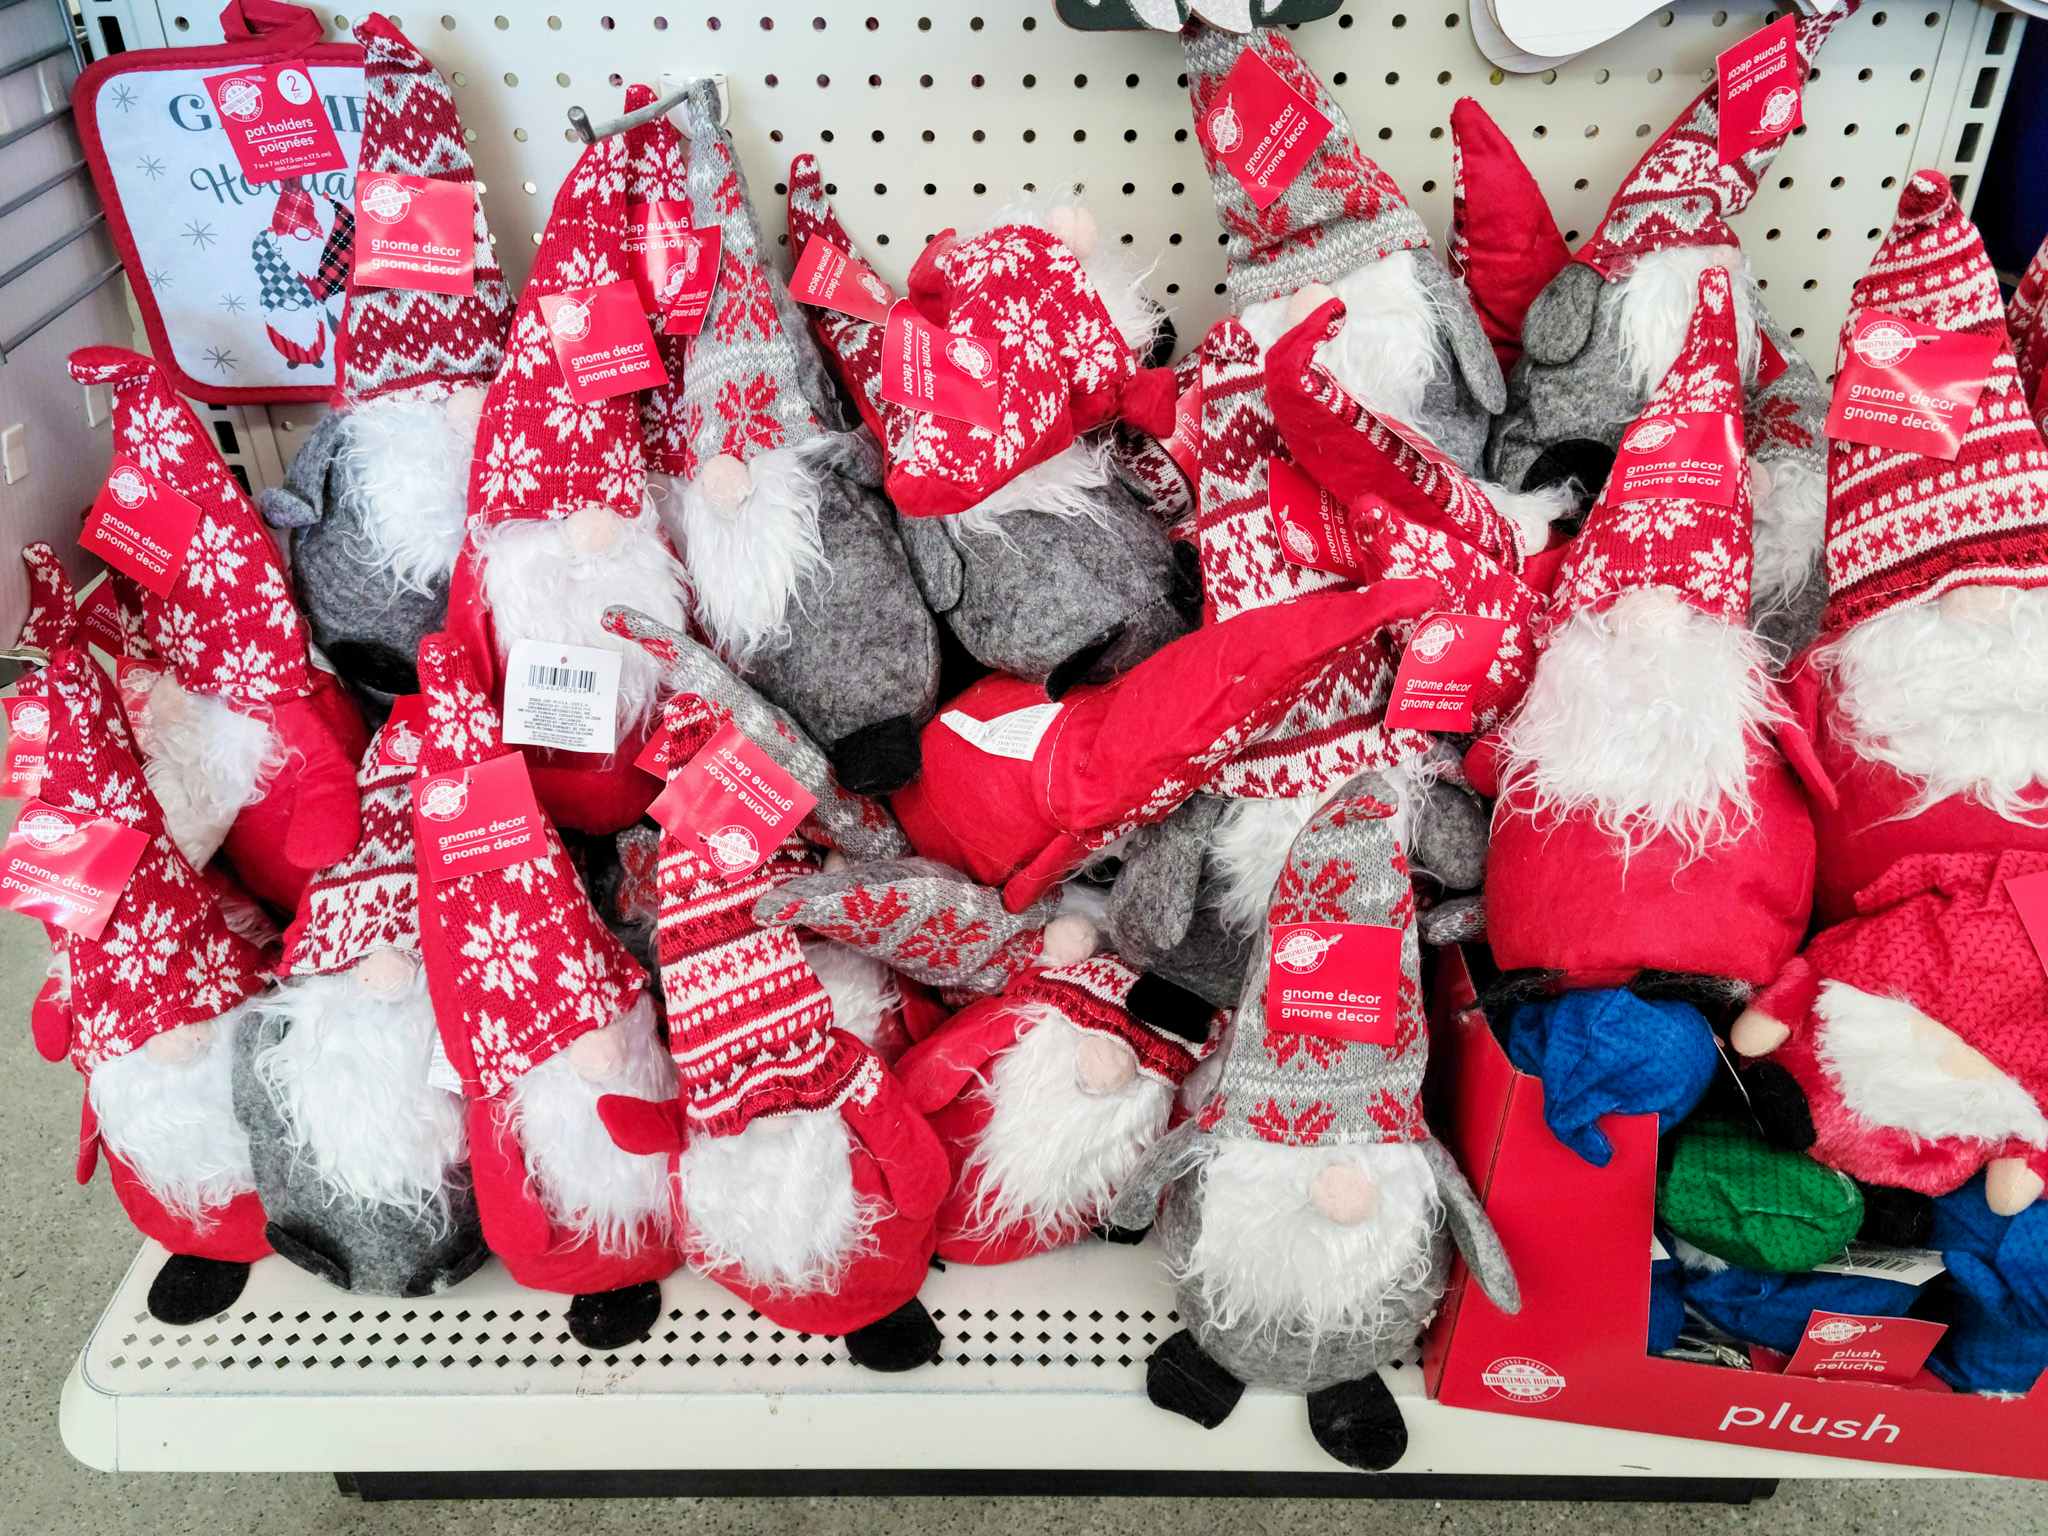 holiday gnomes